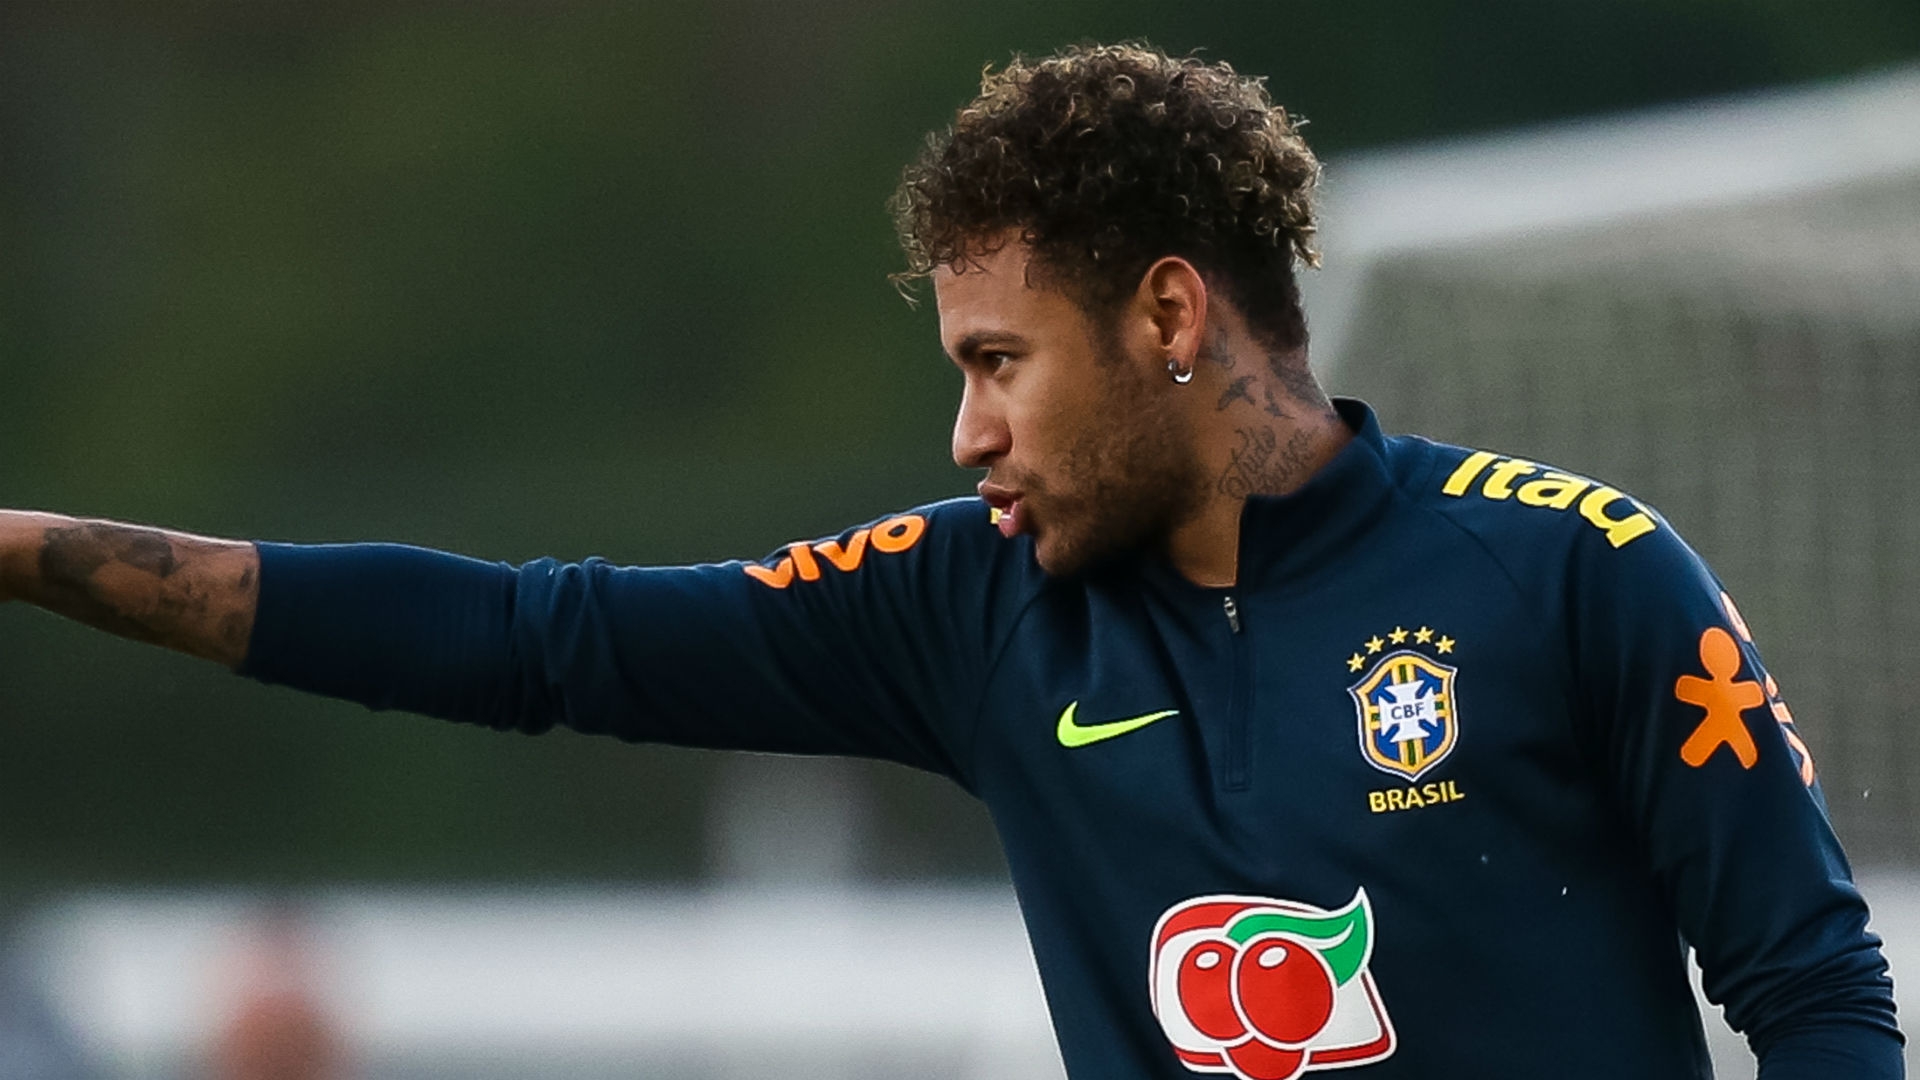 Neymar - Brazil forward